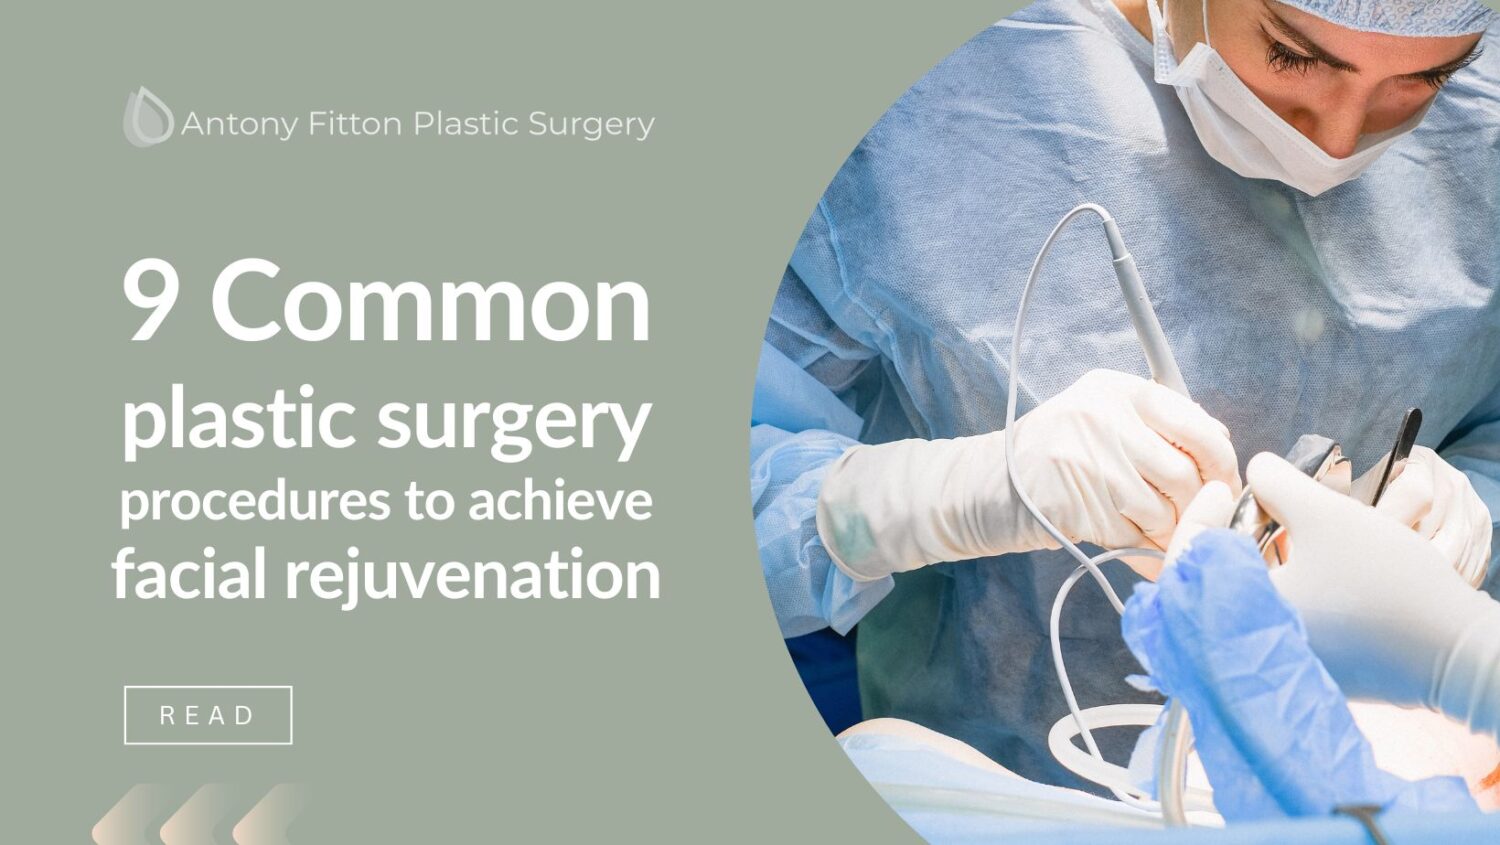 9 Common plastic surgery procedures to achieve facial rejuvenation